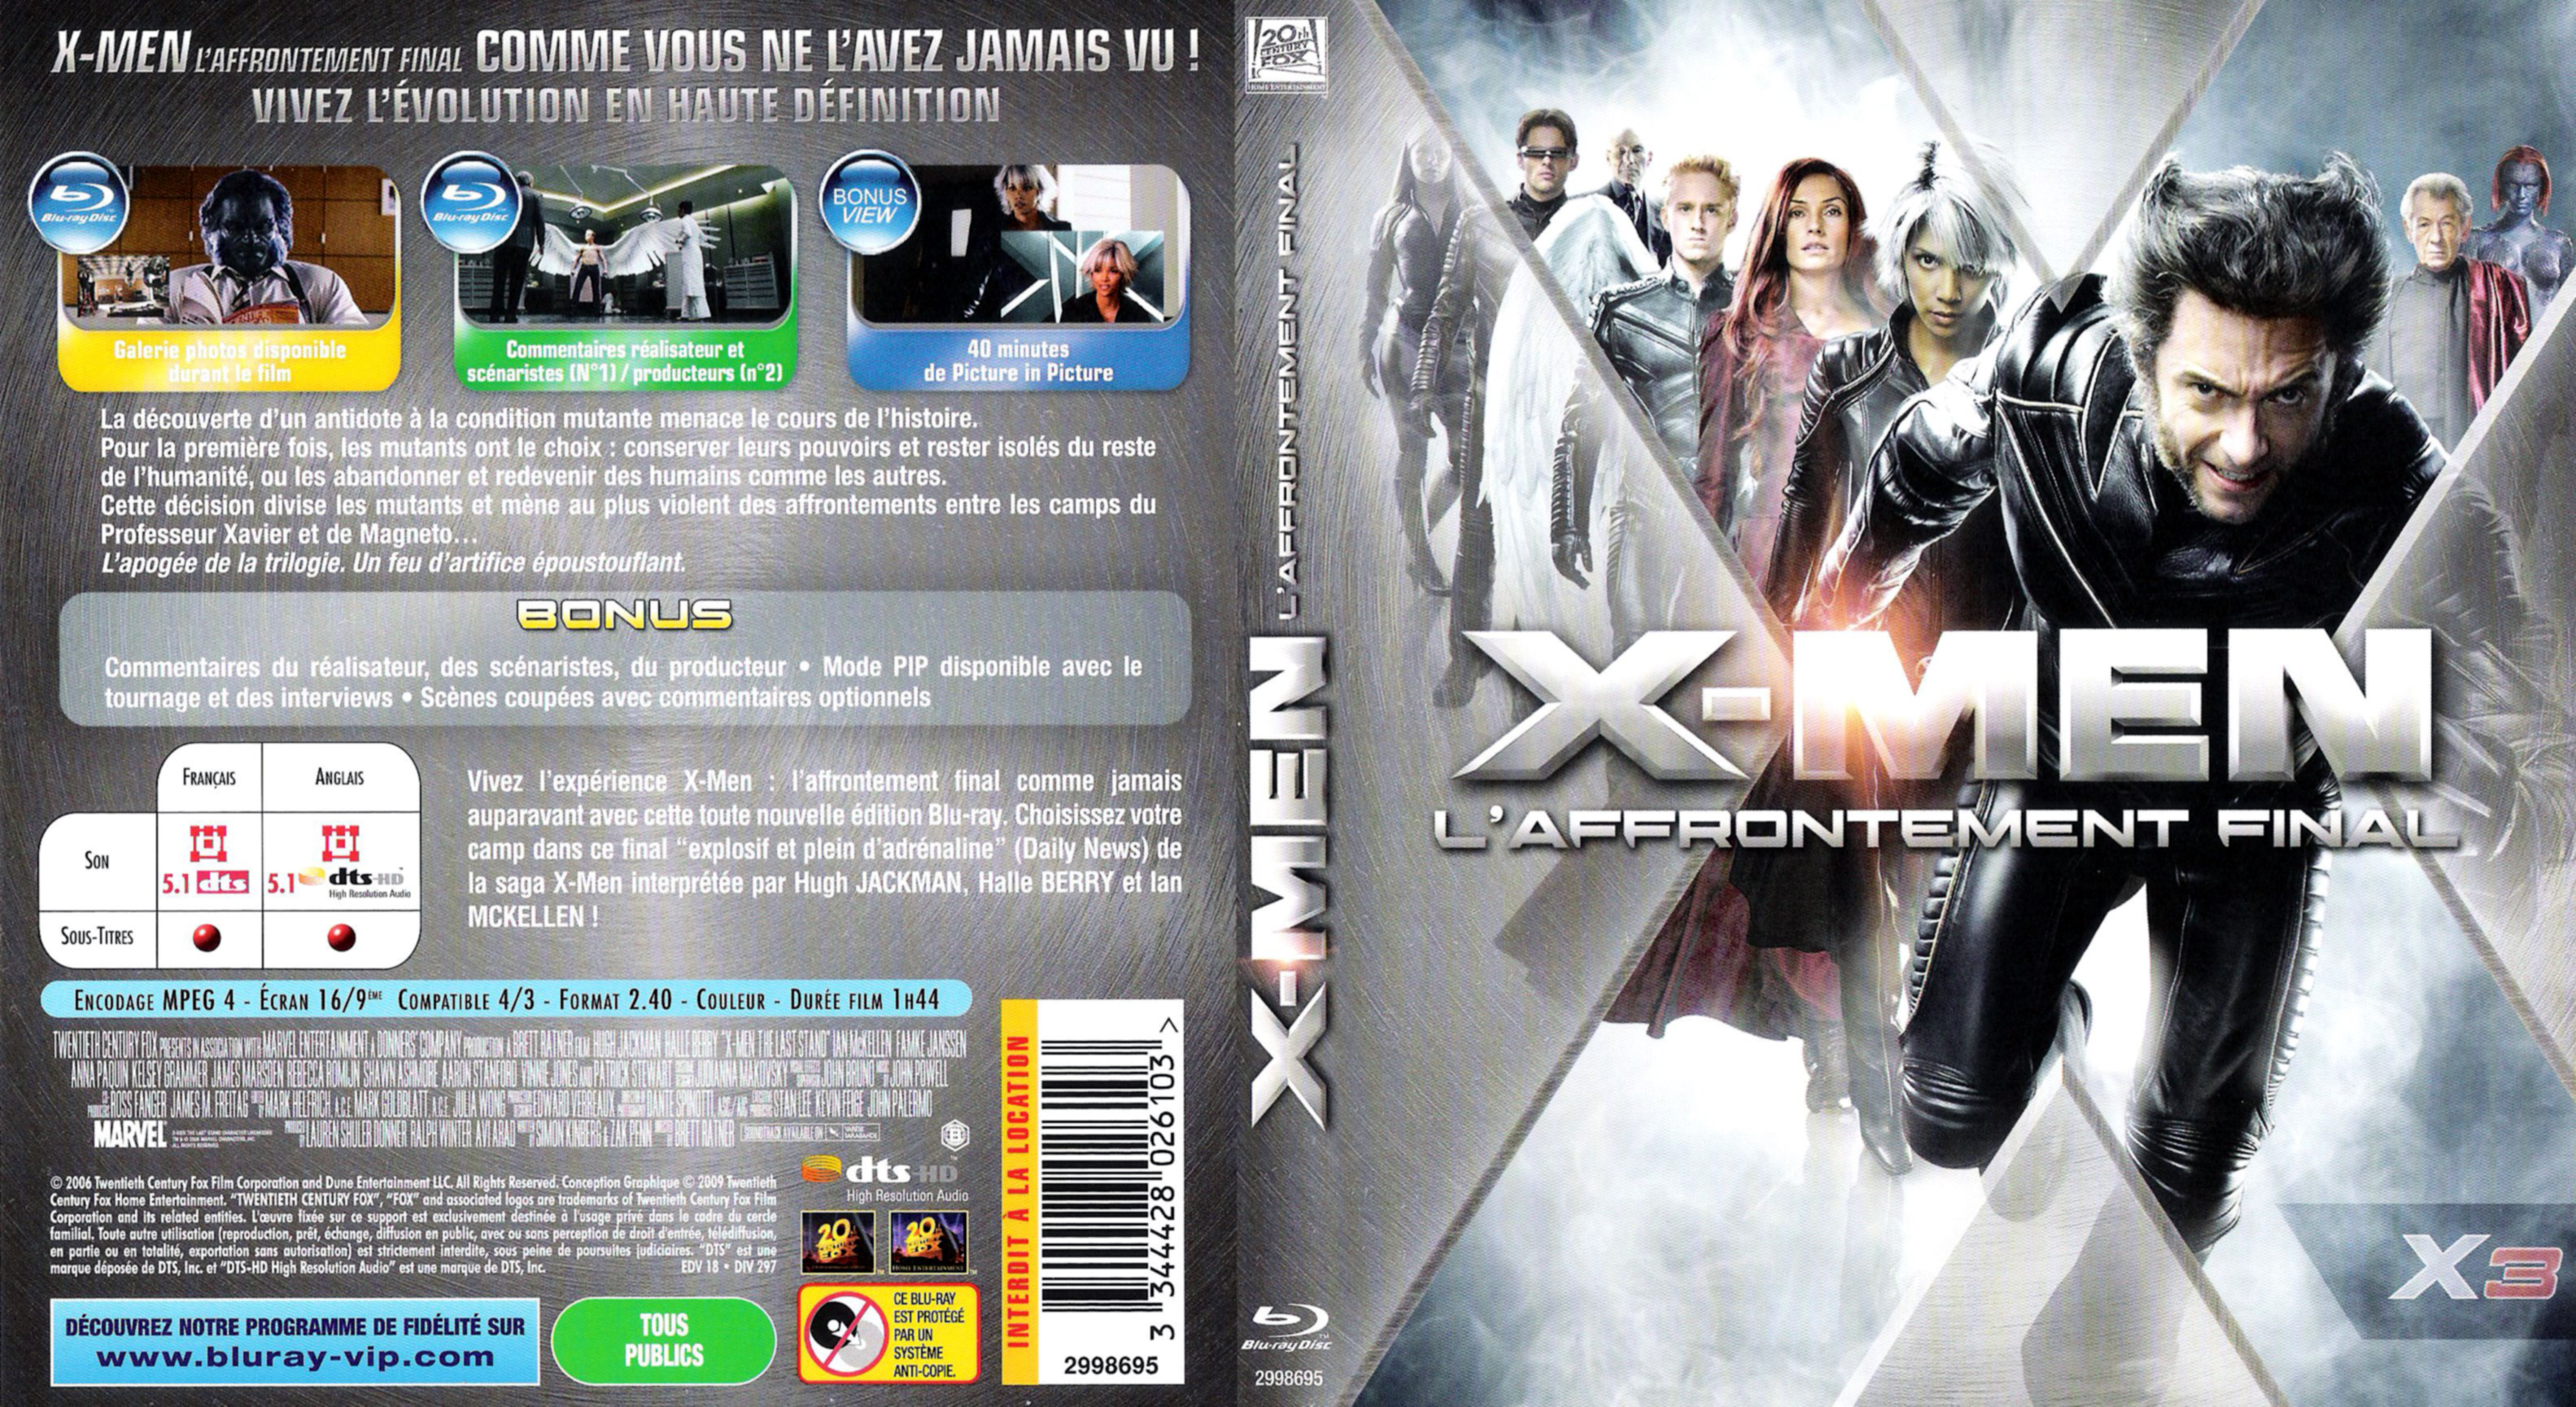 Jaquette DVD X-men 3 (BLU-RAY) v2